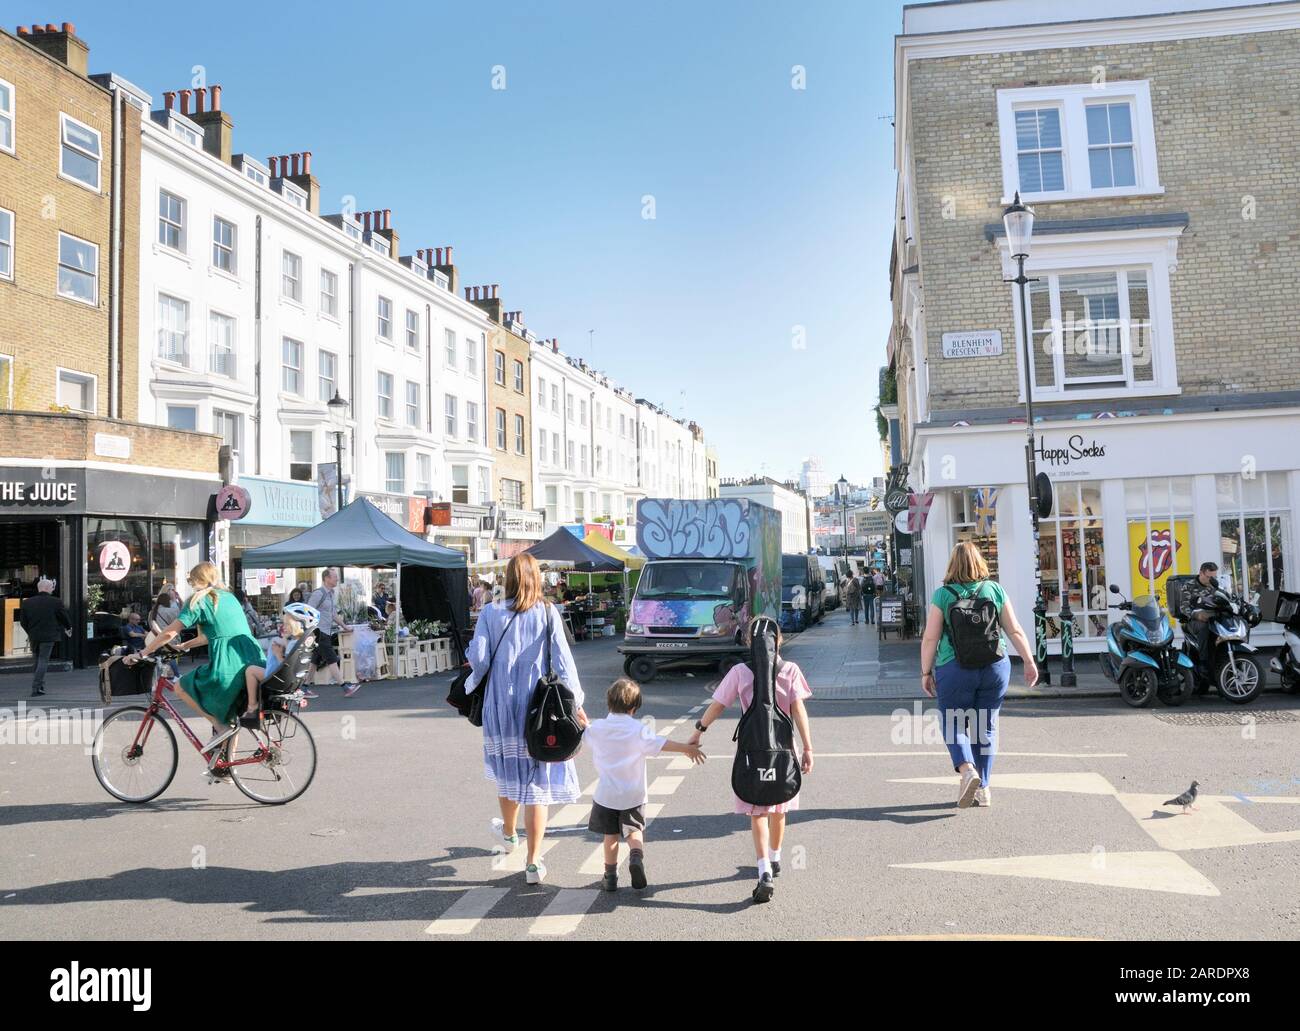 Mère et enfants tenant les mains traversant une rue, Portobello Road, Notting Hill, West London, Angleterre, Royaume-Uni Banque D'Images